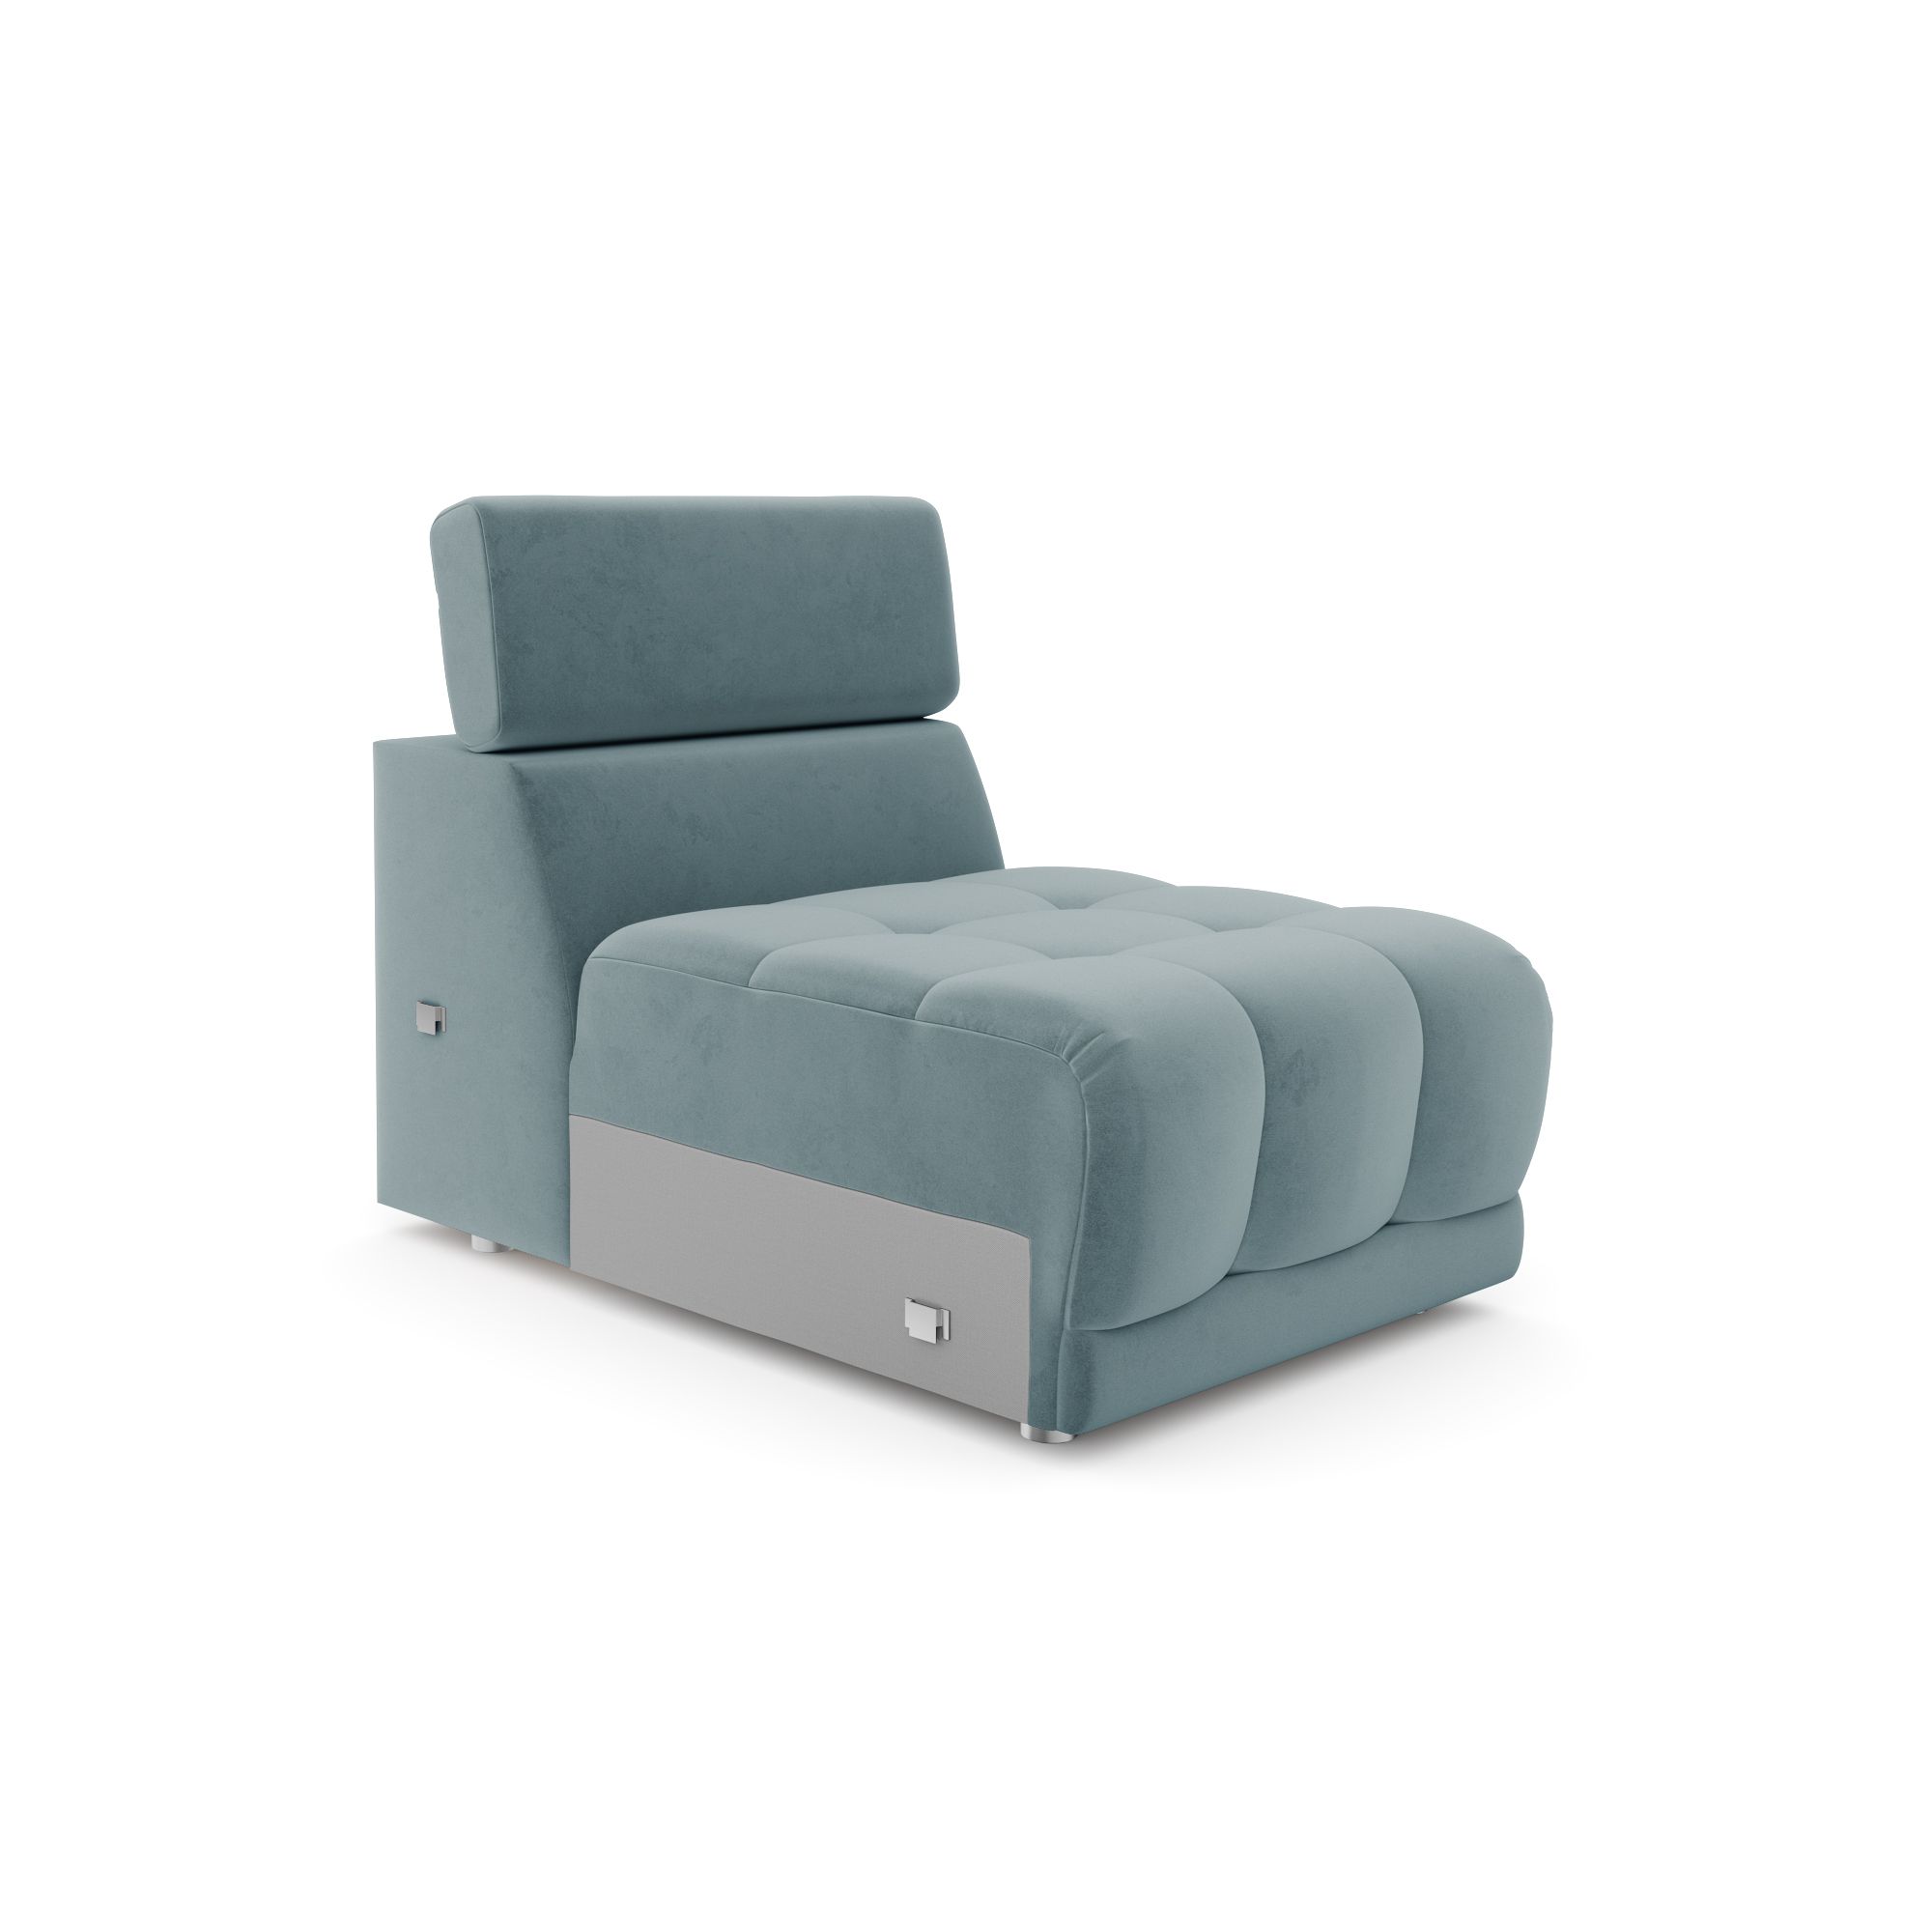 Модуль дивана Флорида кресло без подлокотников, кФЛ03.вл53.53у